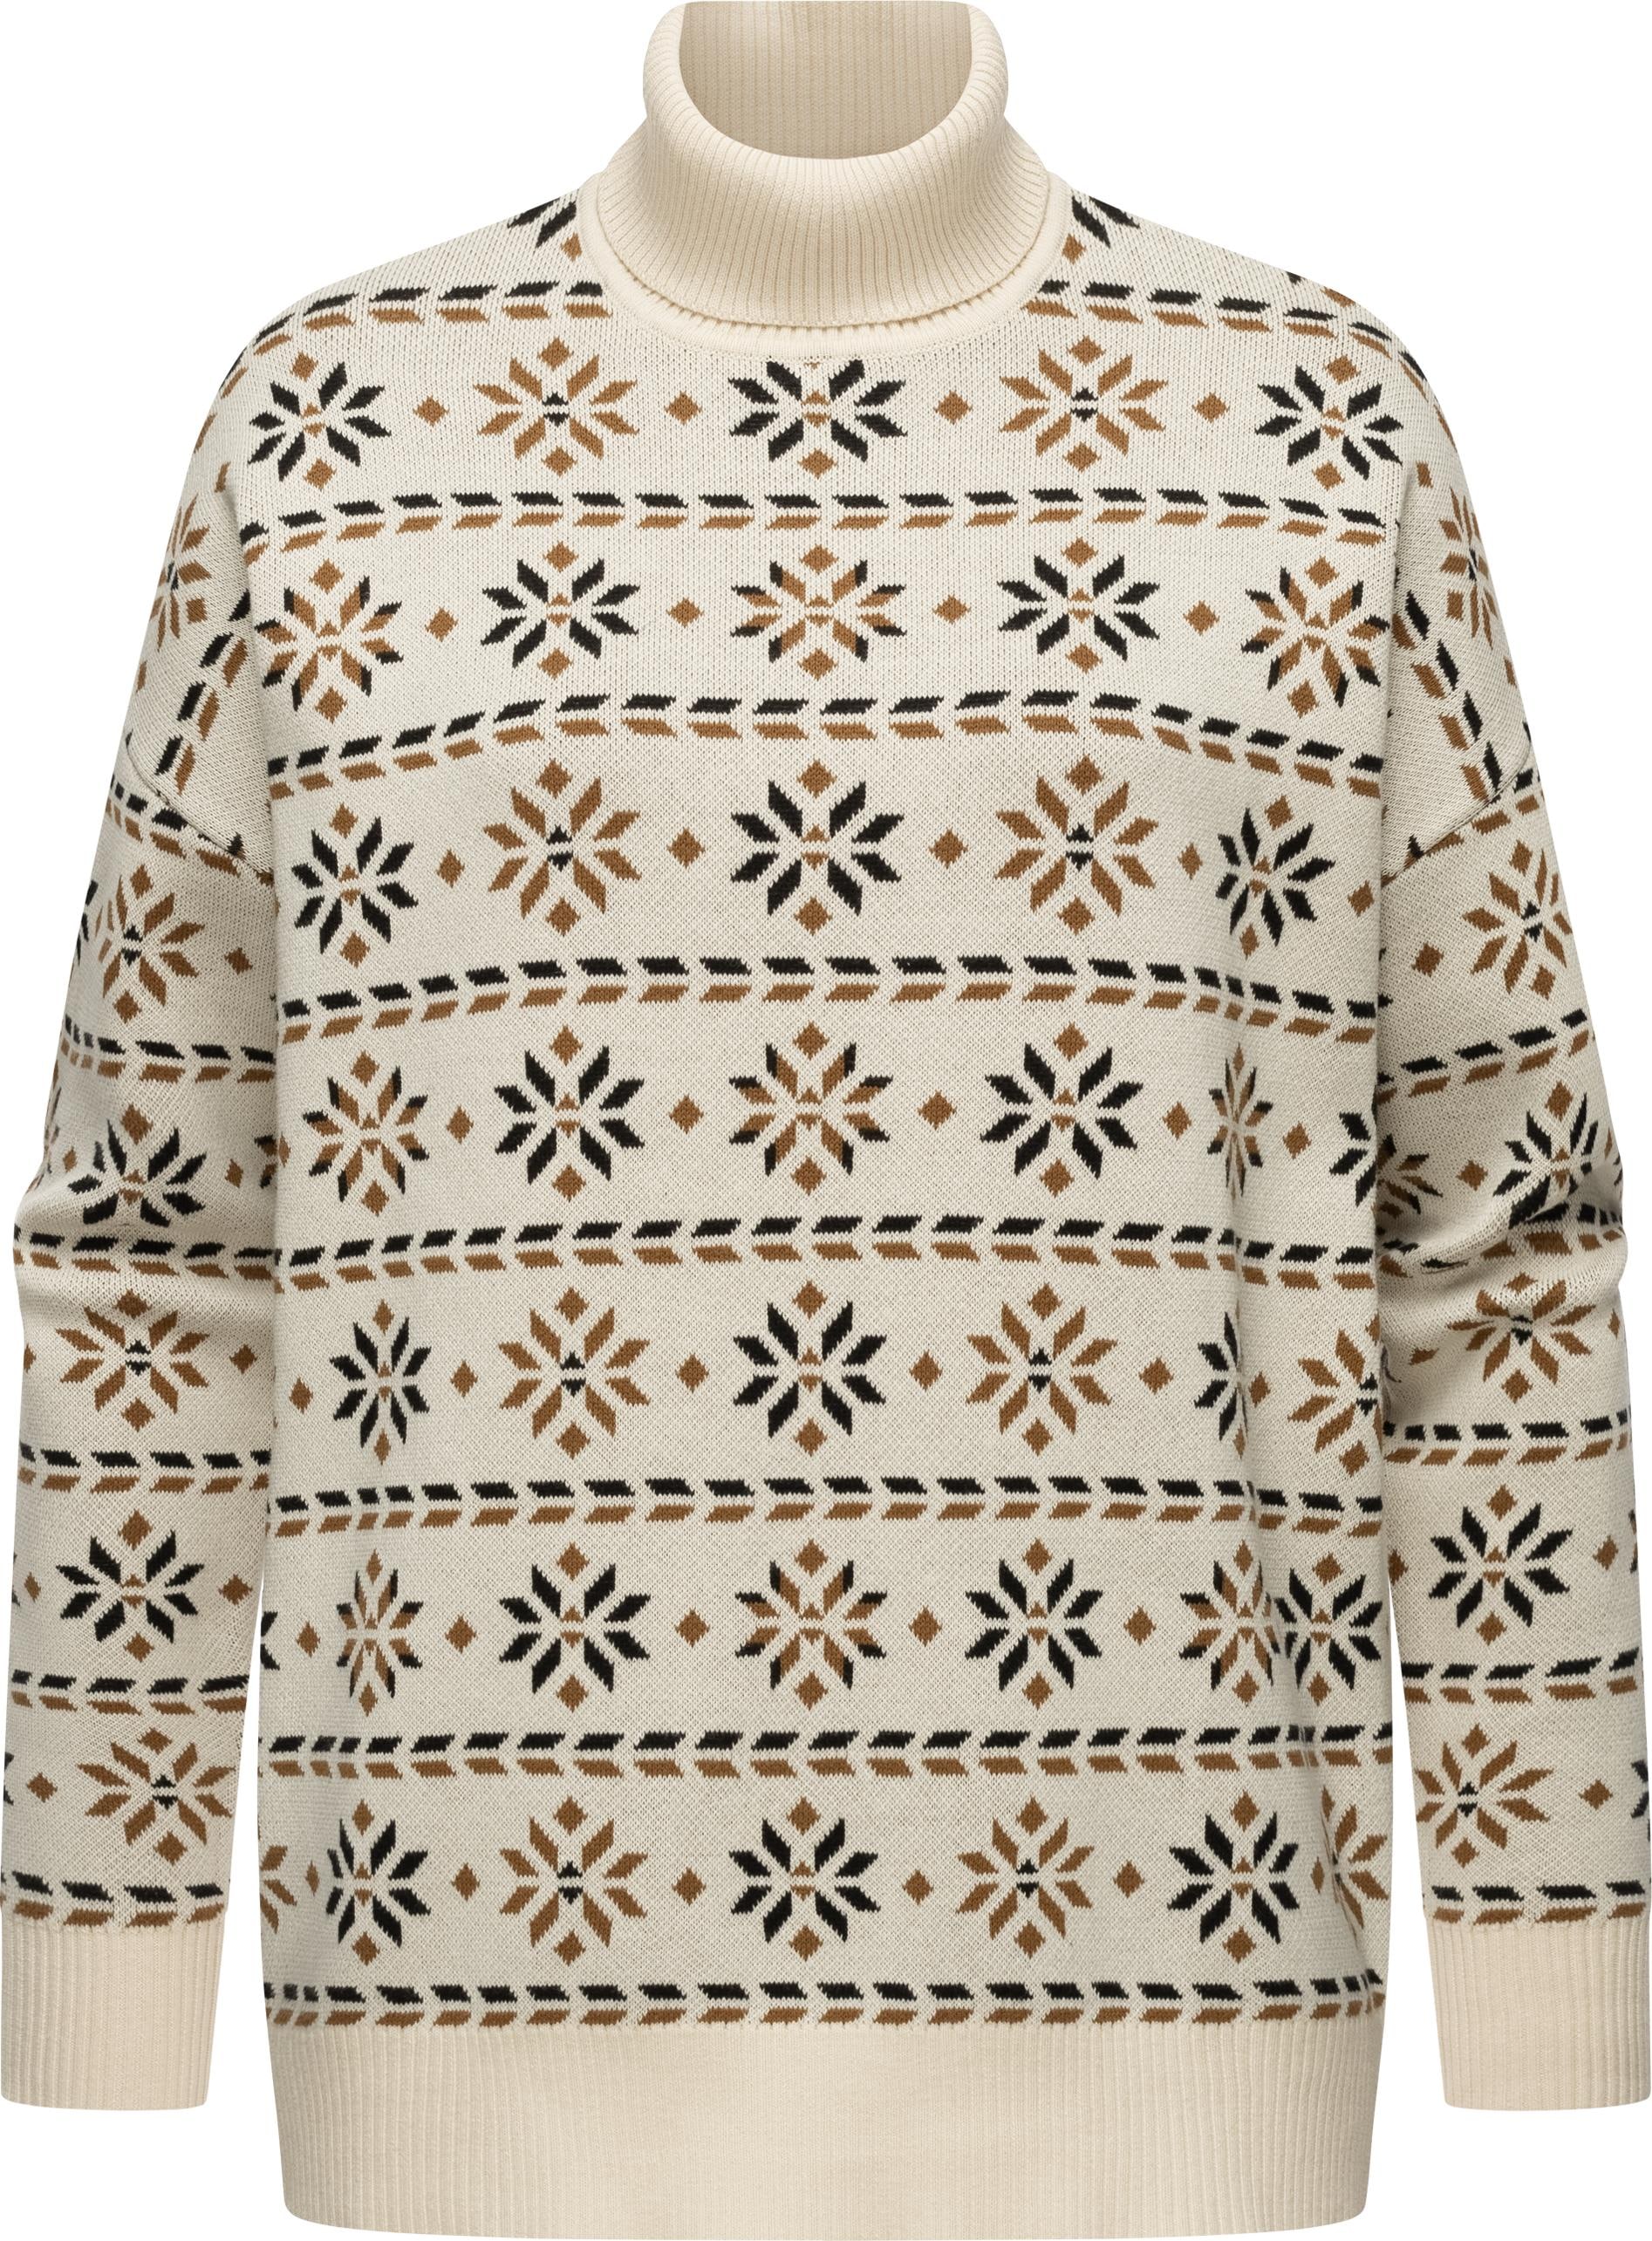 Stehkragenpullover »Danika Organic«, Damen Pullover mit winterlichem Muster-Print